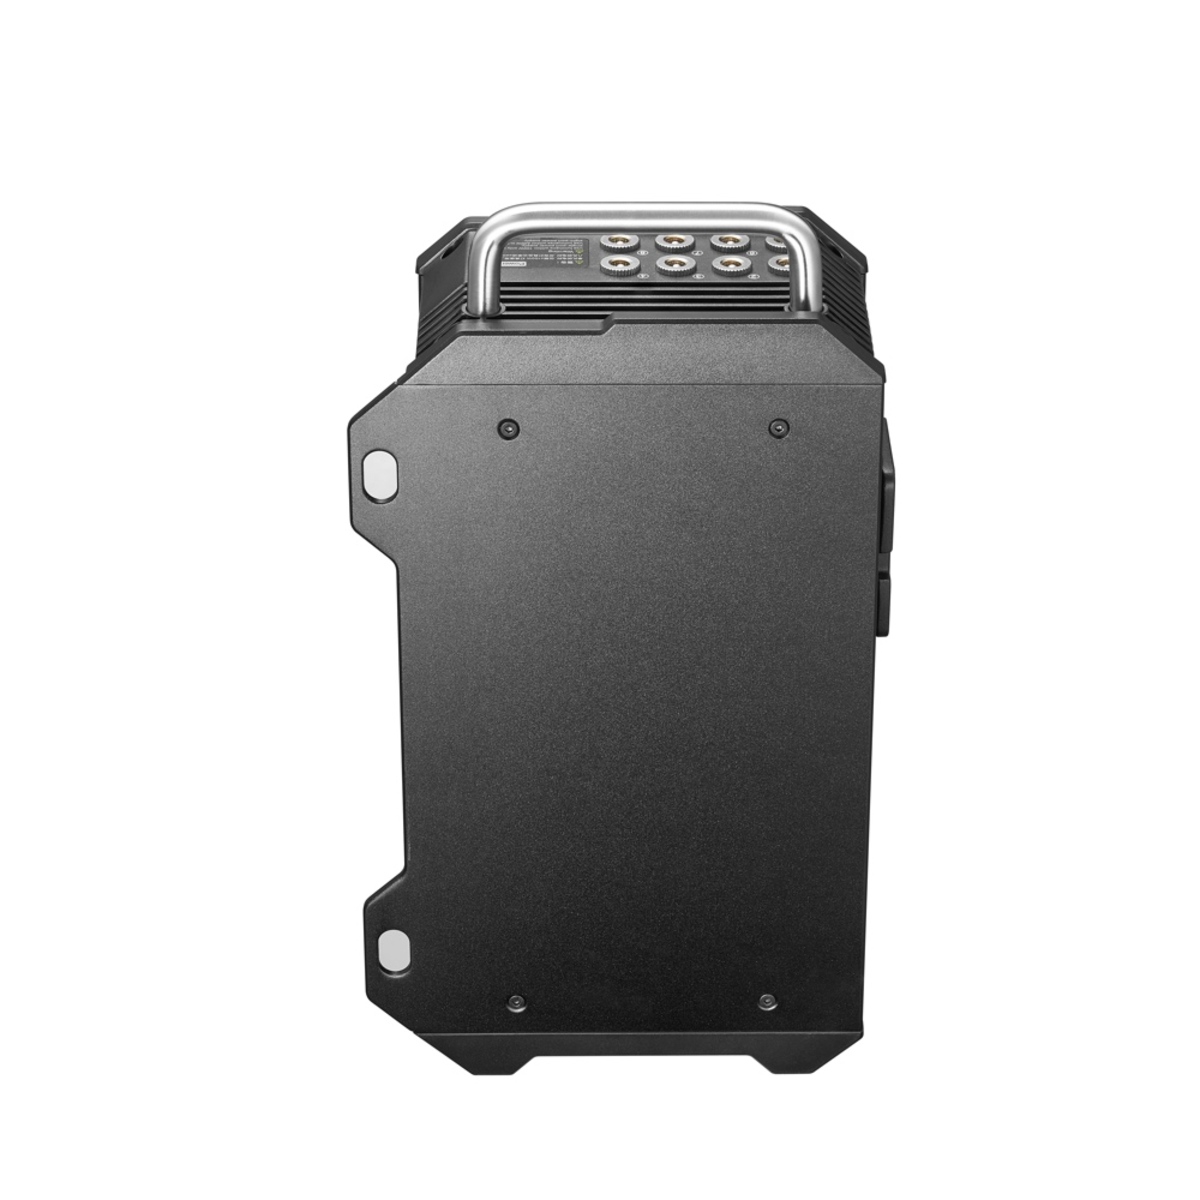 Godox Charger Box for TP4R-K8 8 Light Kit